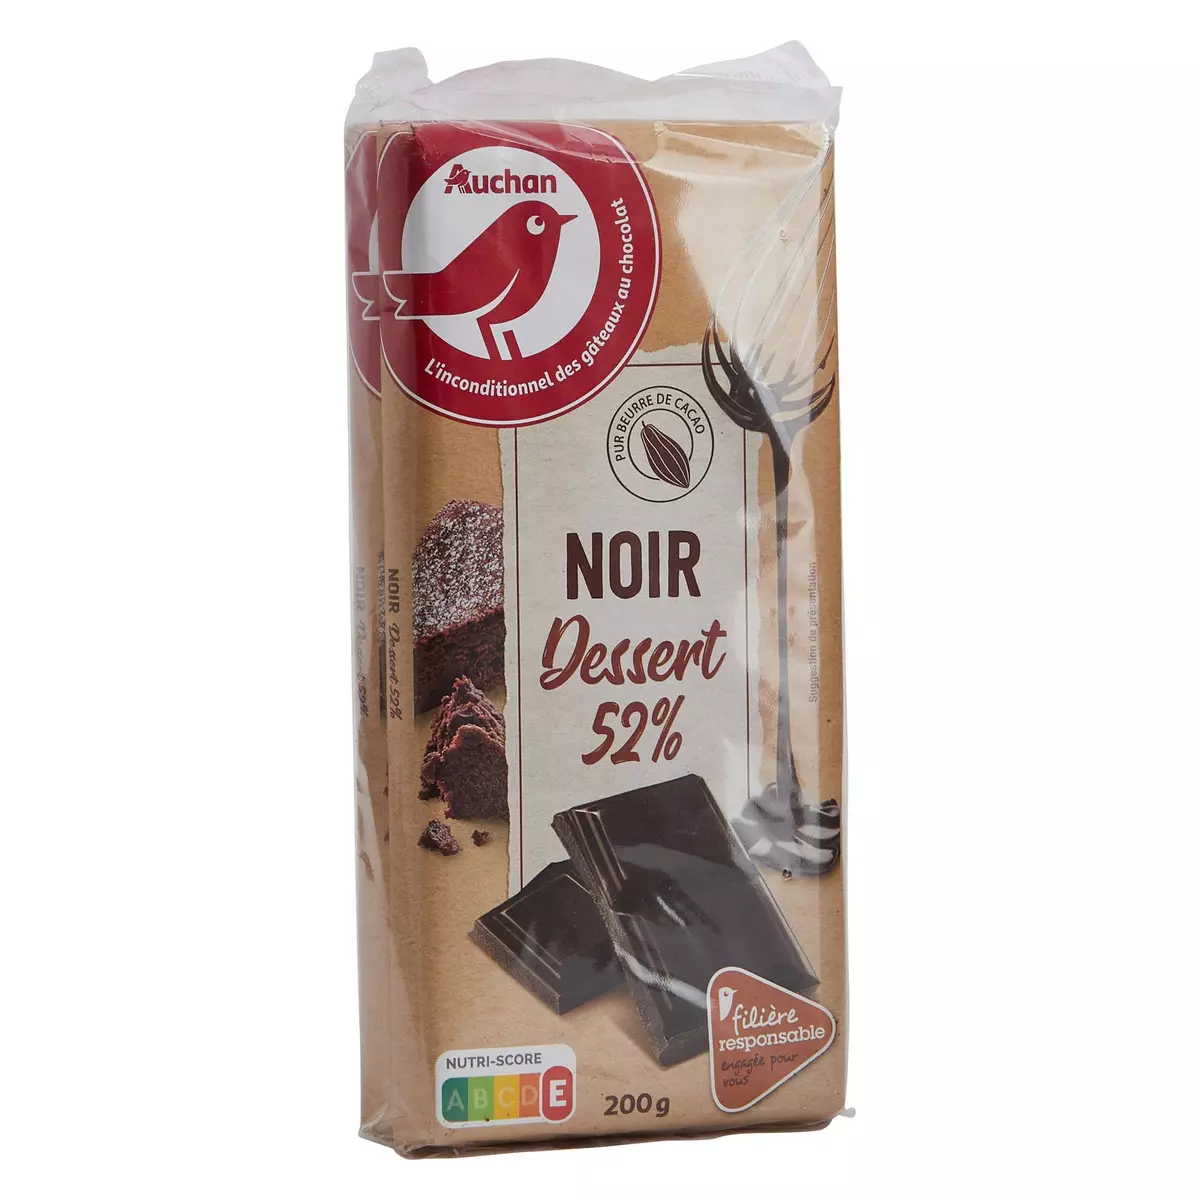 AUCHAN Tablette de chocolat noir pâtissier 52% de cacao Filière responsable 2 pièces 2x200g